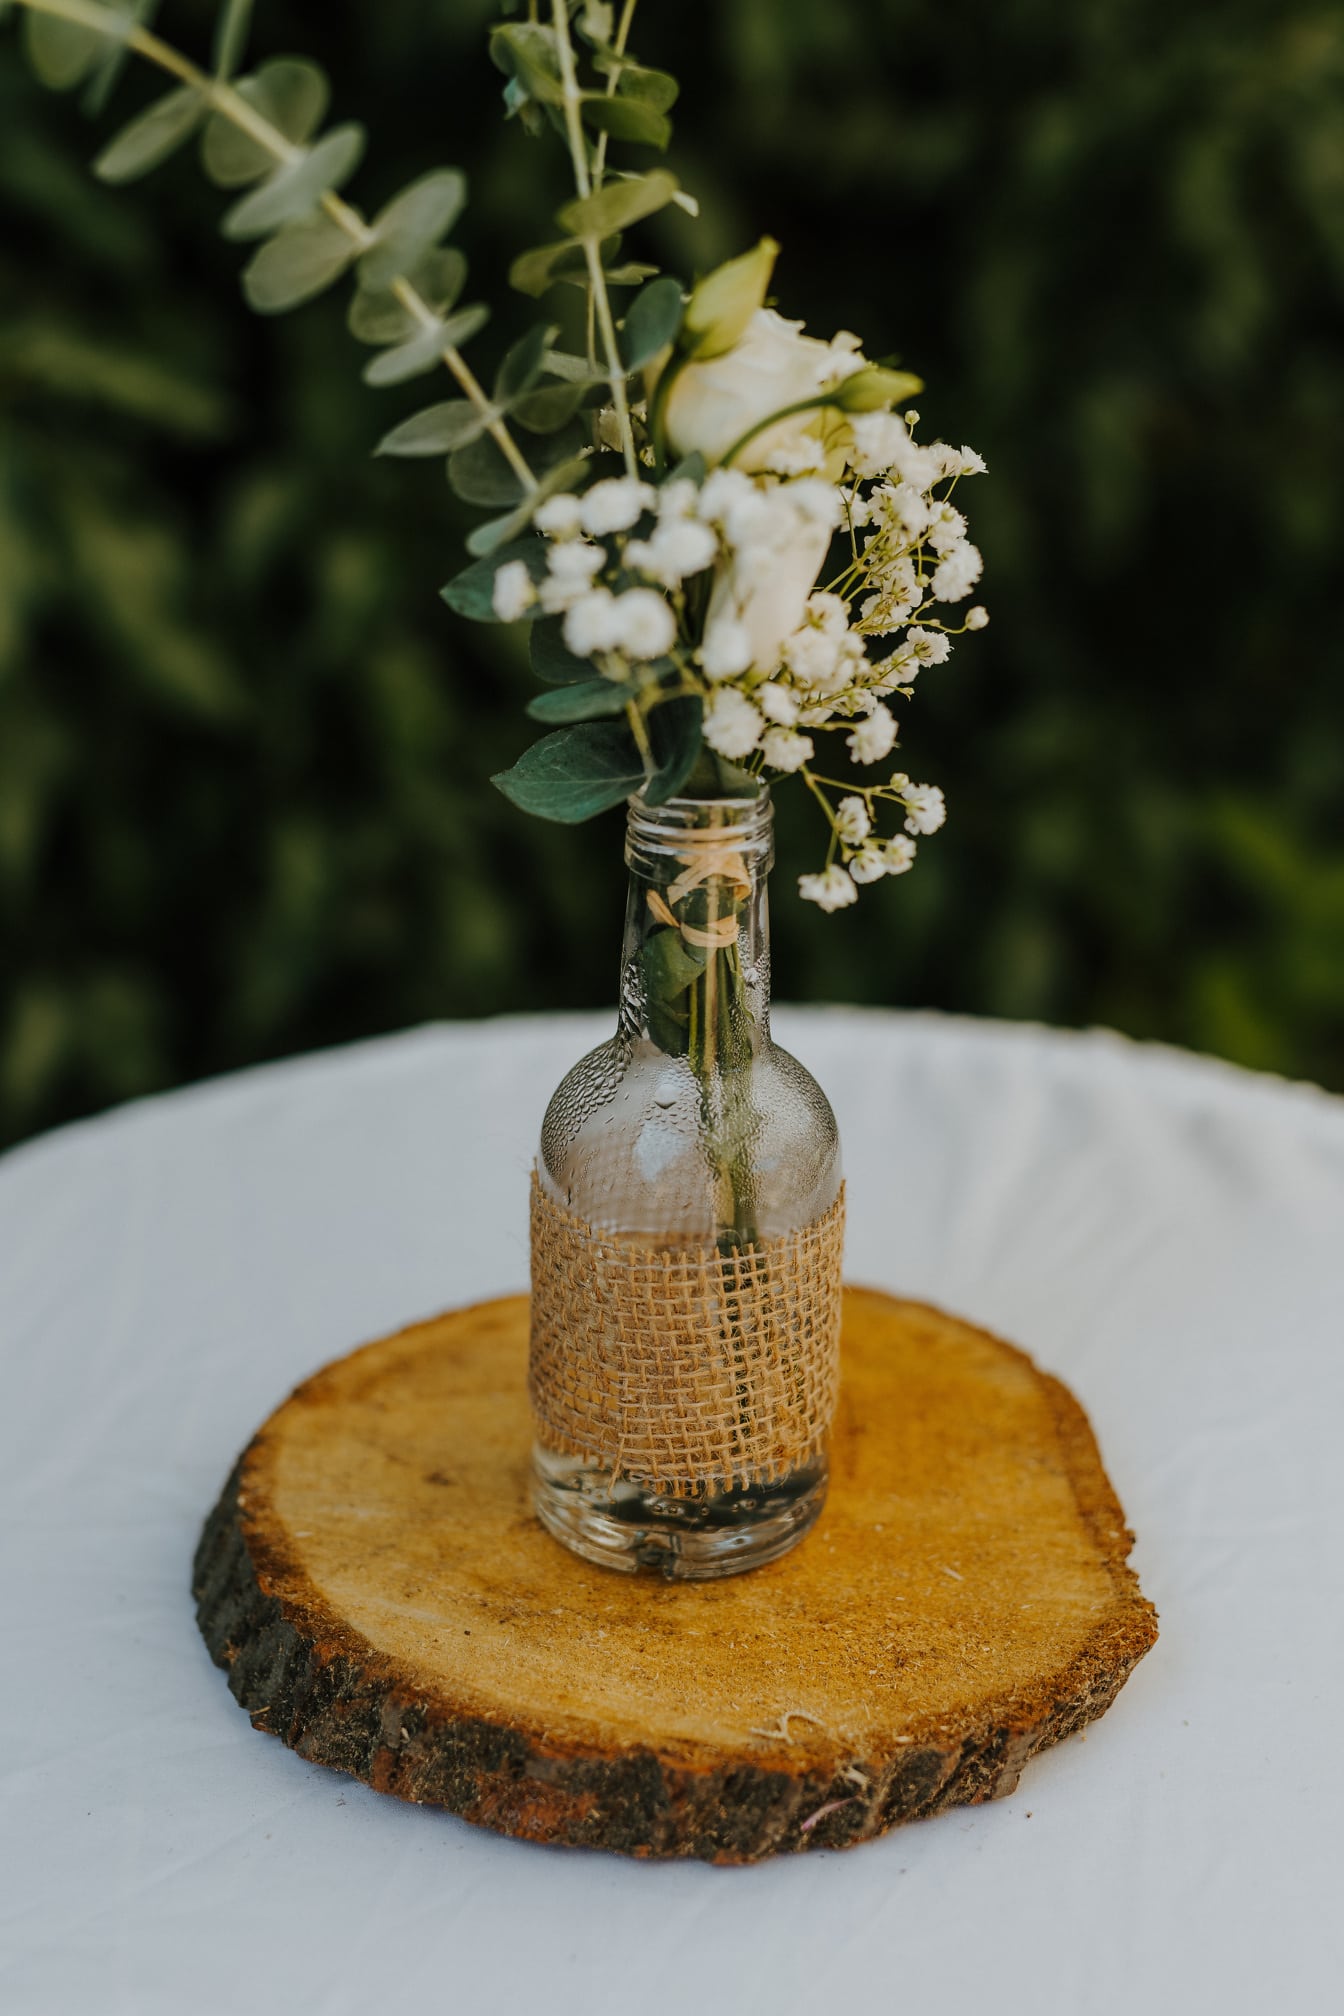 Flores brancas na decoração rústica da garrafa transparente no close-up da mesa